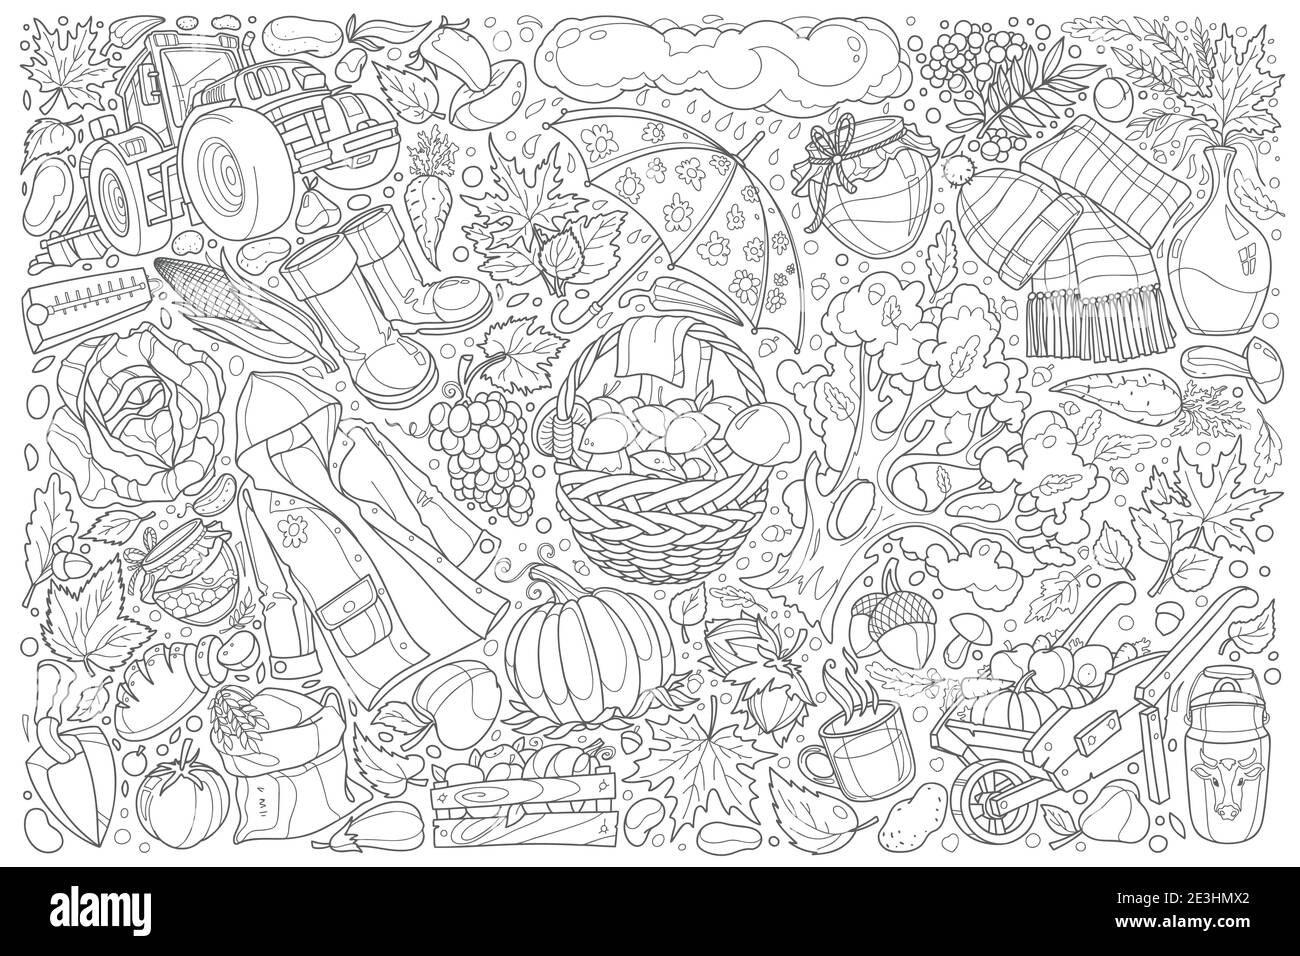 Dessin à la main de l'ensemble de doodle d'automne vecteur illustration arrière-plan Illustration de Vecteur